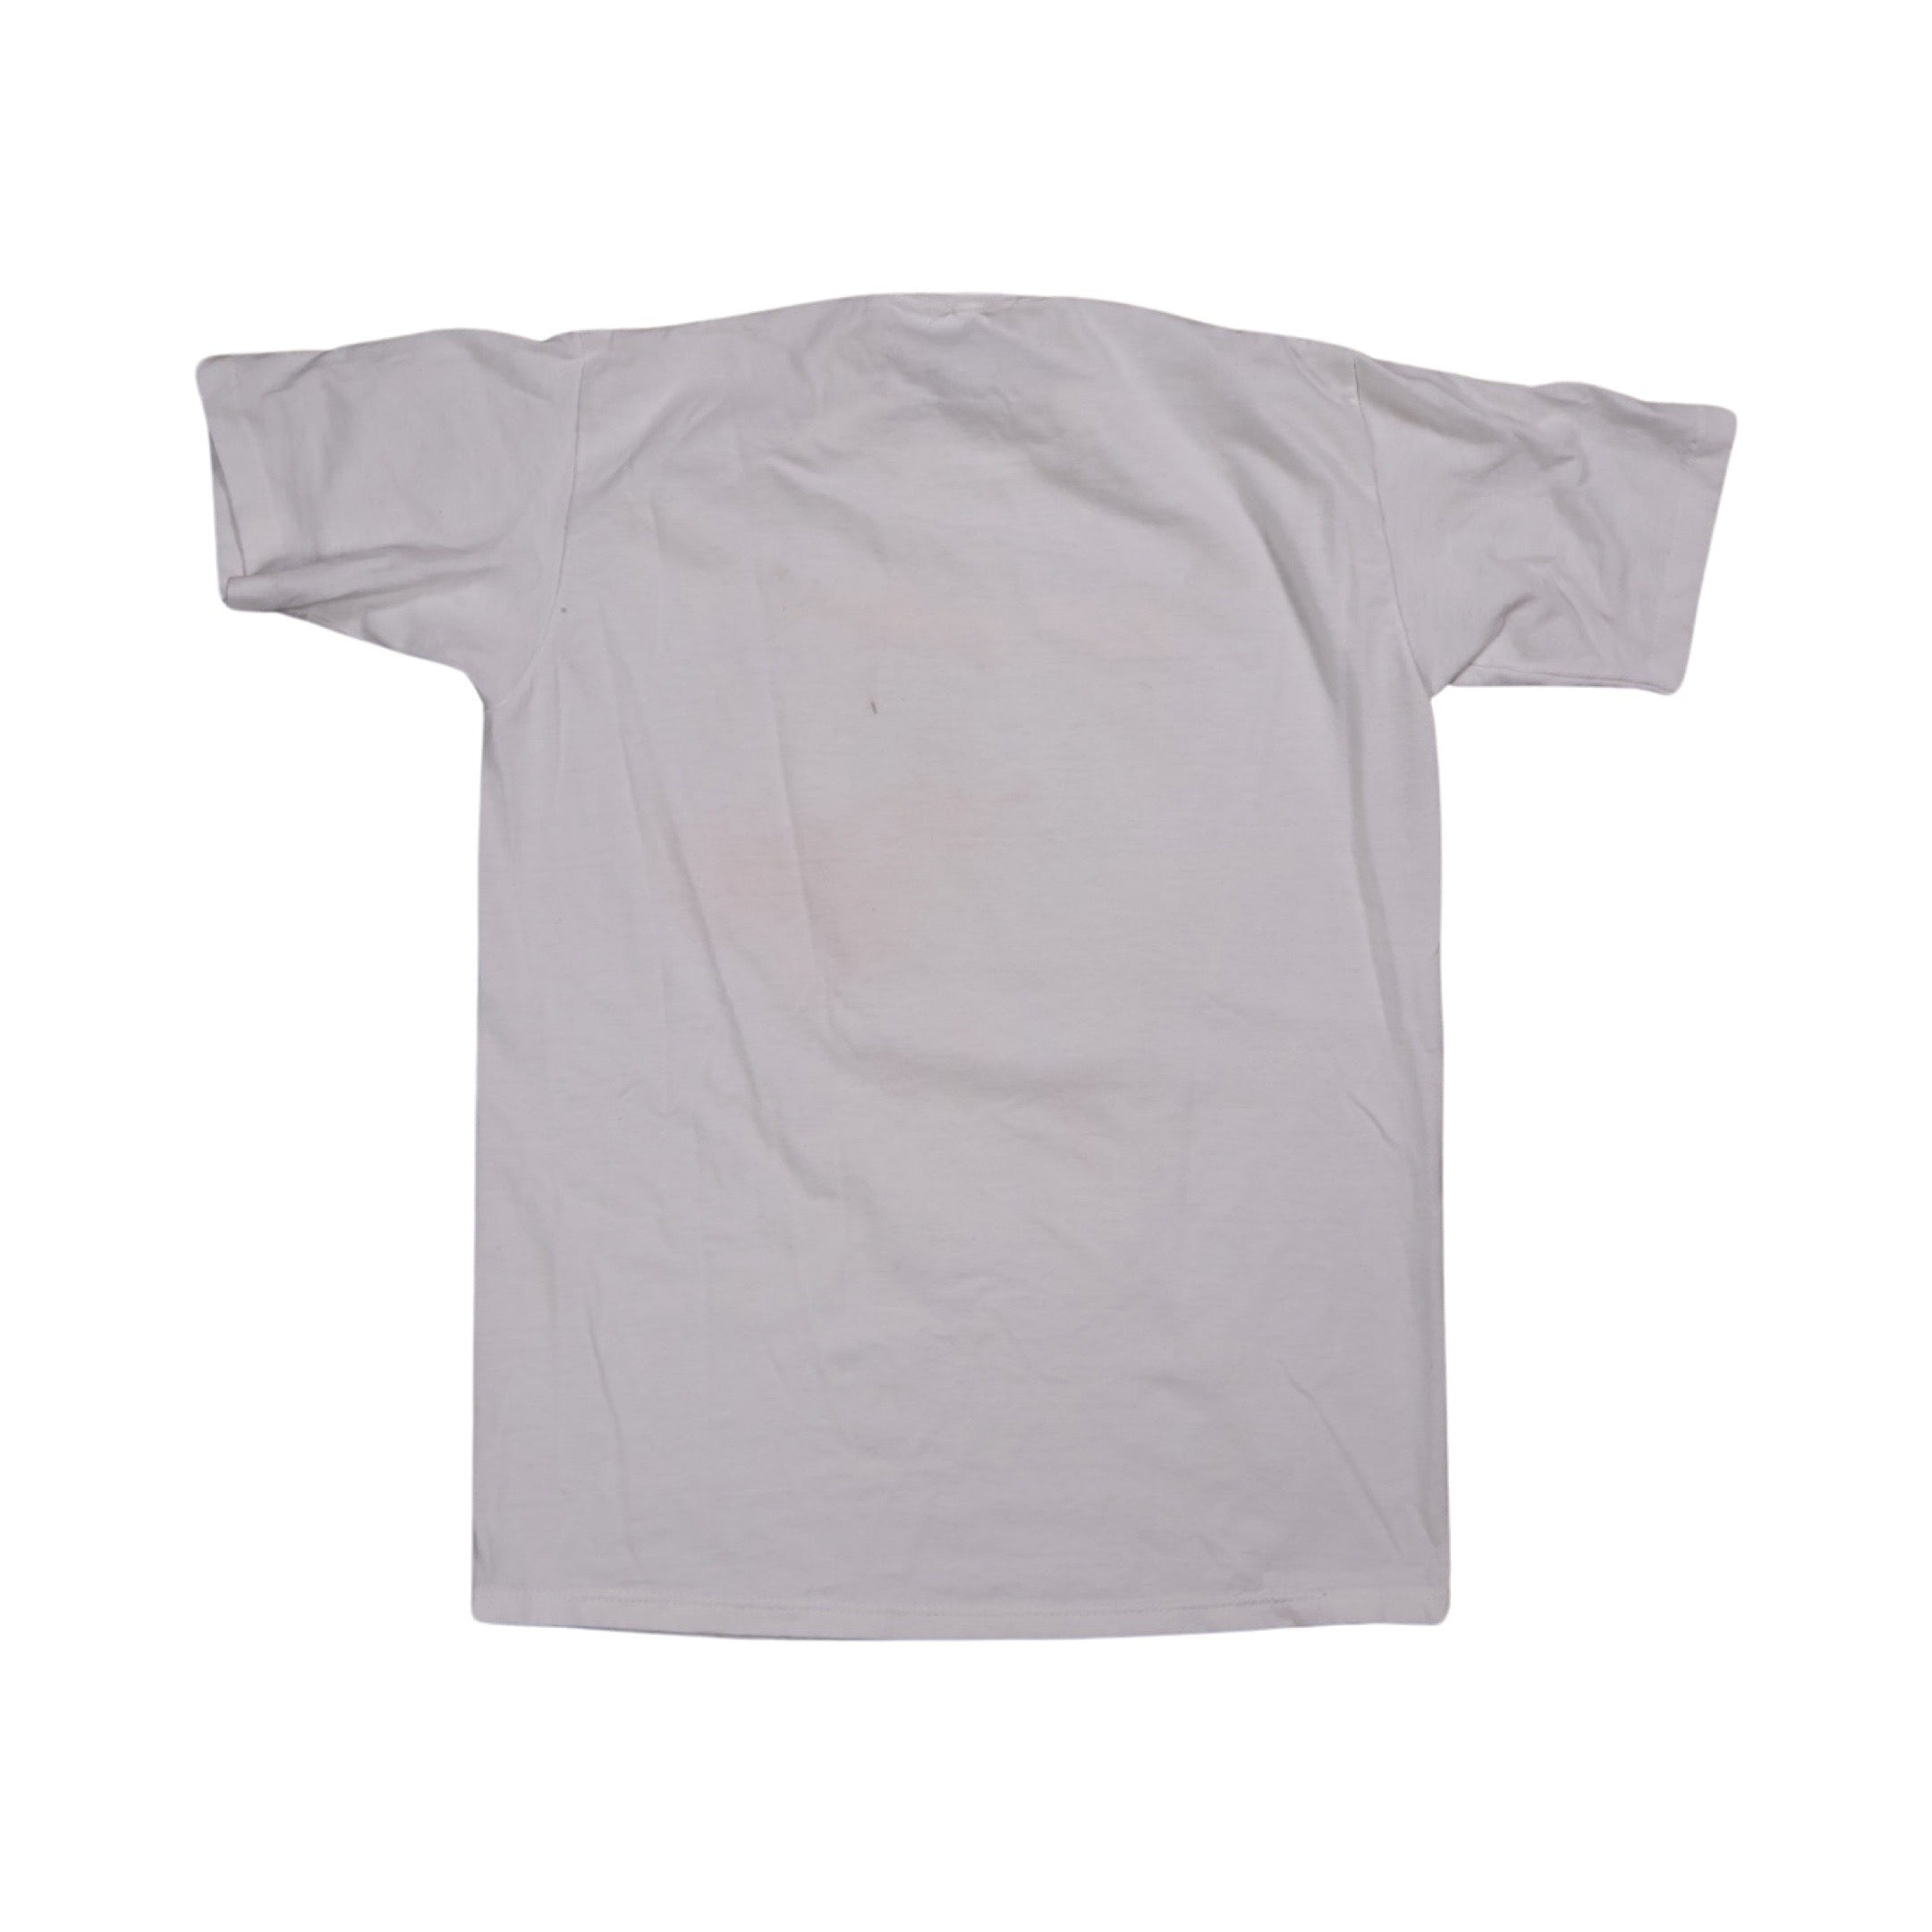 Captain Condom 1988 T-Shirt (Medium)